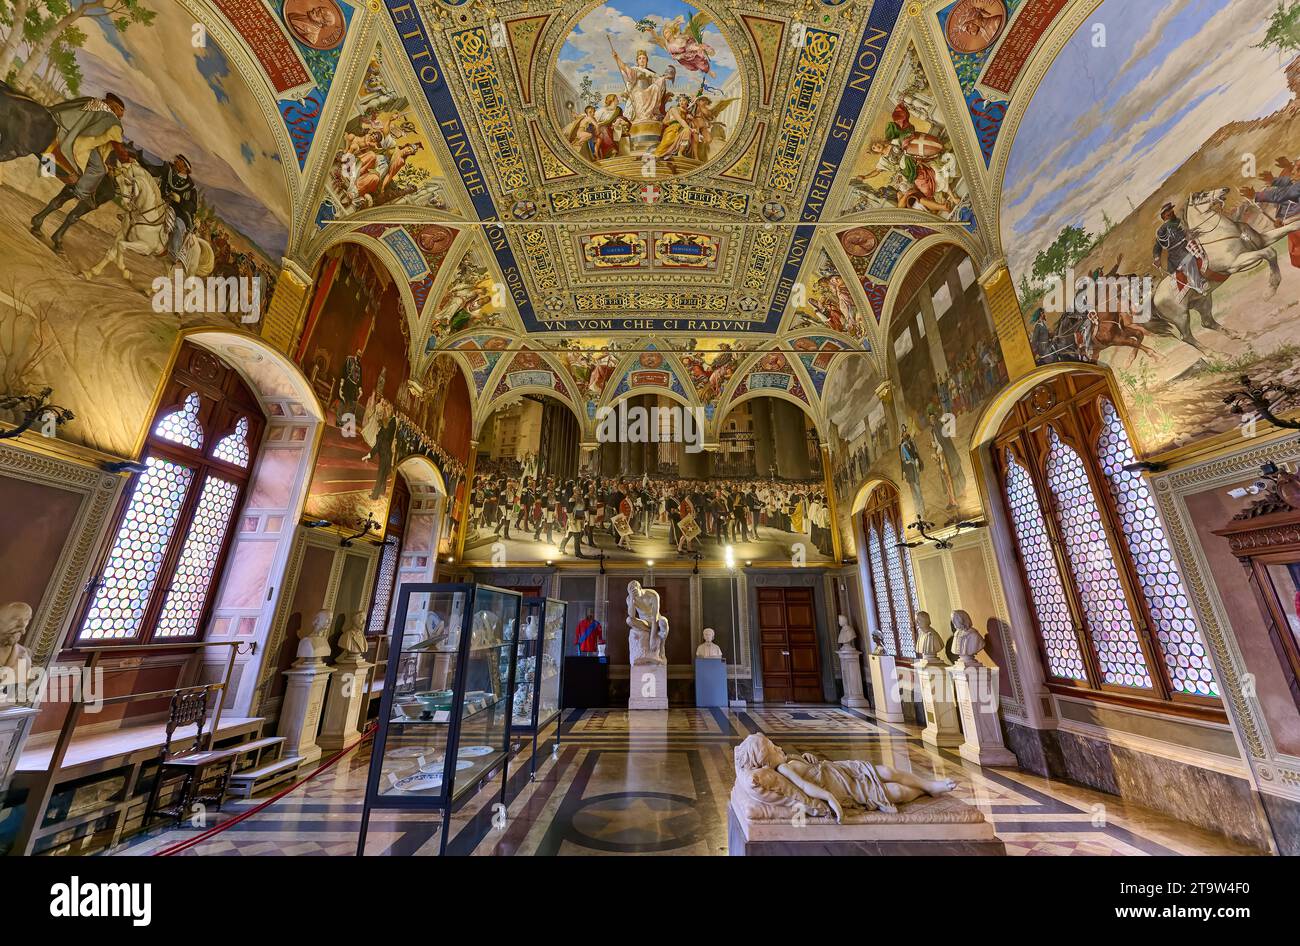 Room of the Risorgimento, interior shot of Palazzo Pubblico, Siena, Tuscany, Italy Stock Photo